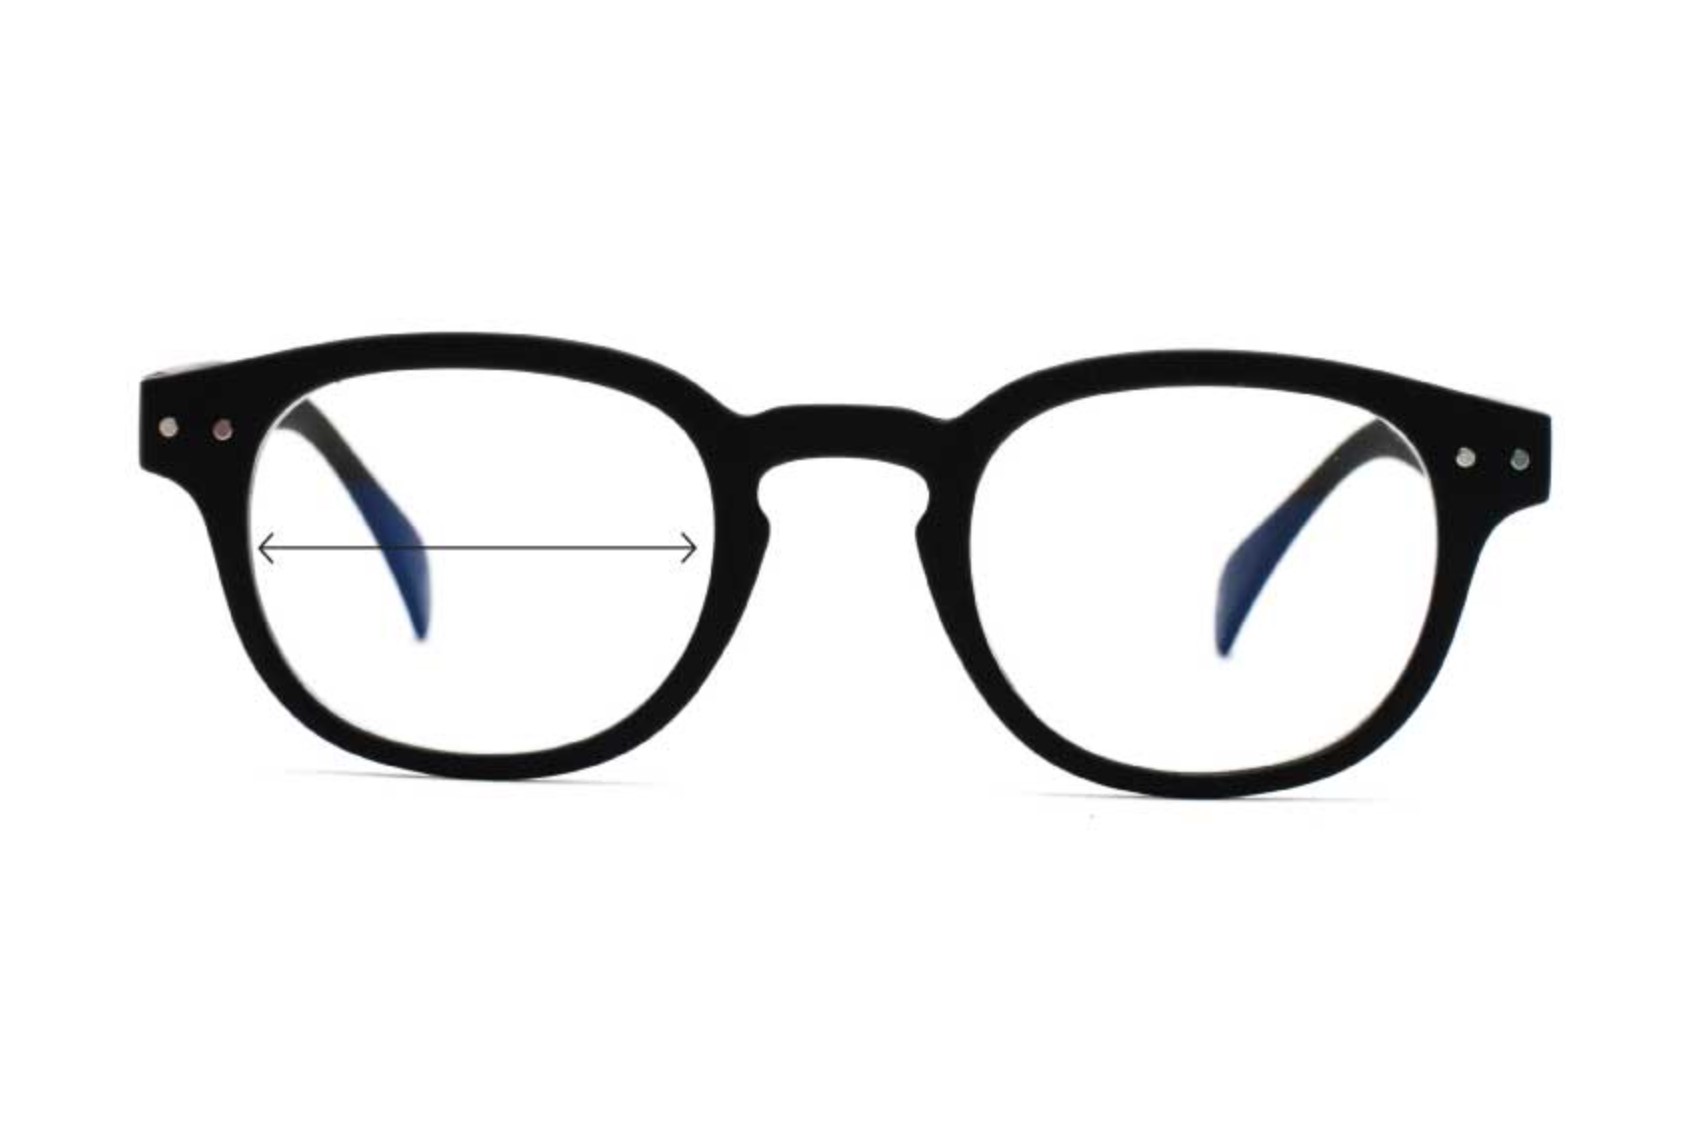 – Anton UVAllBlue WW Blue Light Glasses, Women's